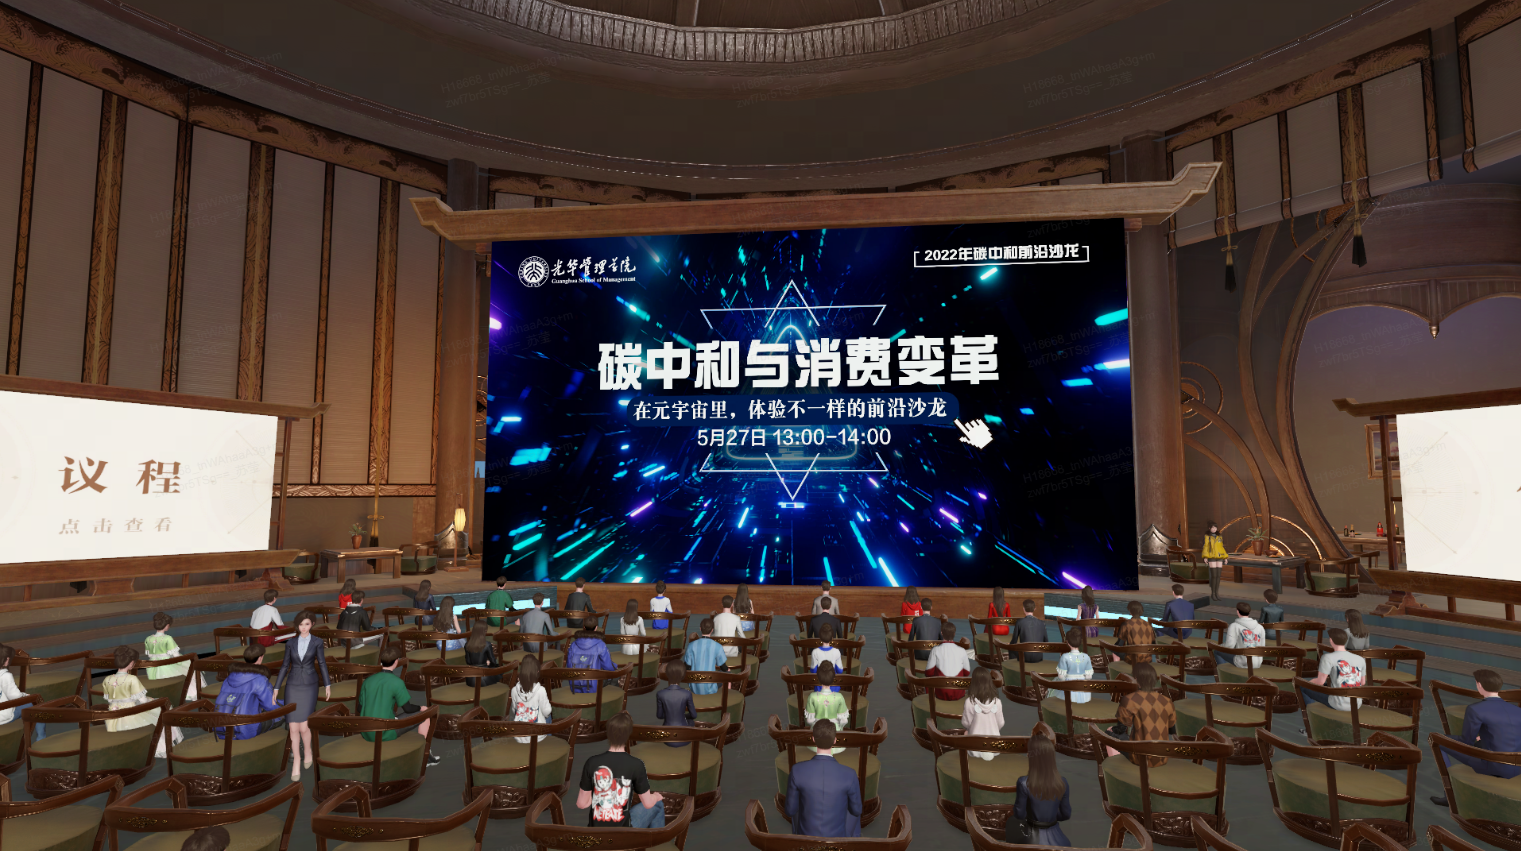 图片展示了一个室内活动现场，观众坐在会场内，前方是一个显示着宣传文字和日期的大屏幕。